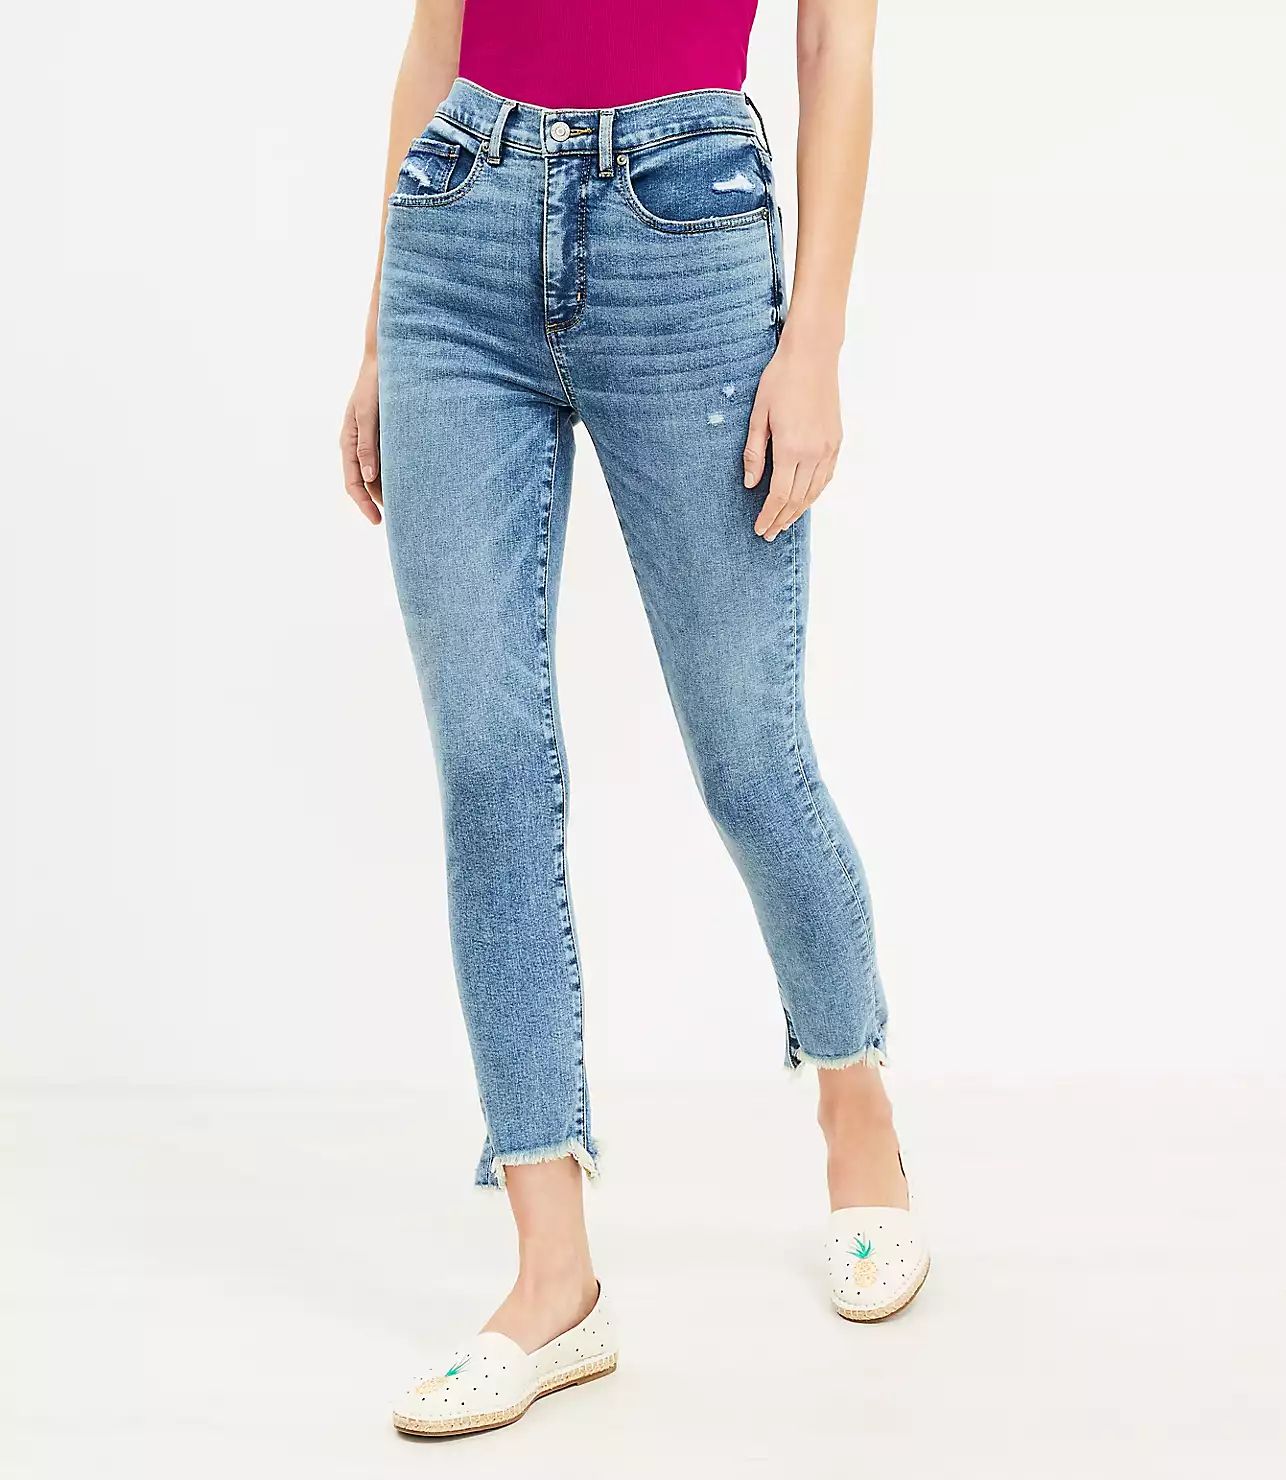 Curvy Mid Rise Skinny Jeans in Mid Indigo Wash | LOFT